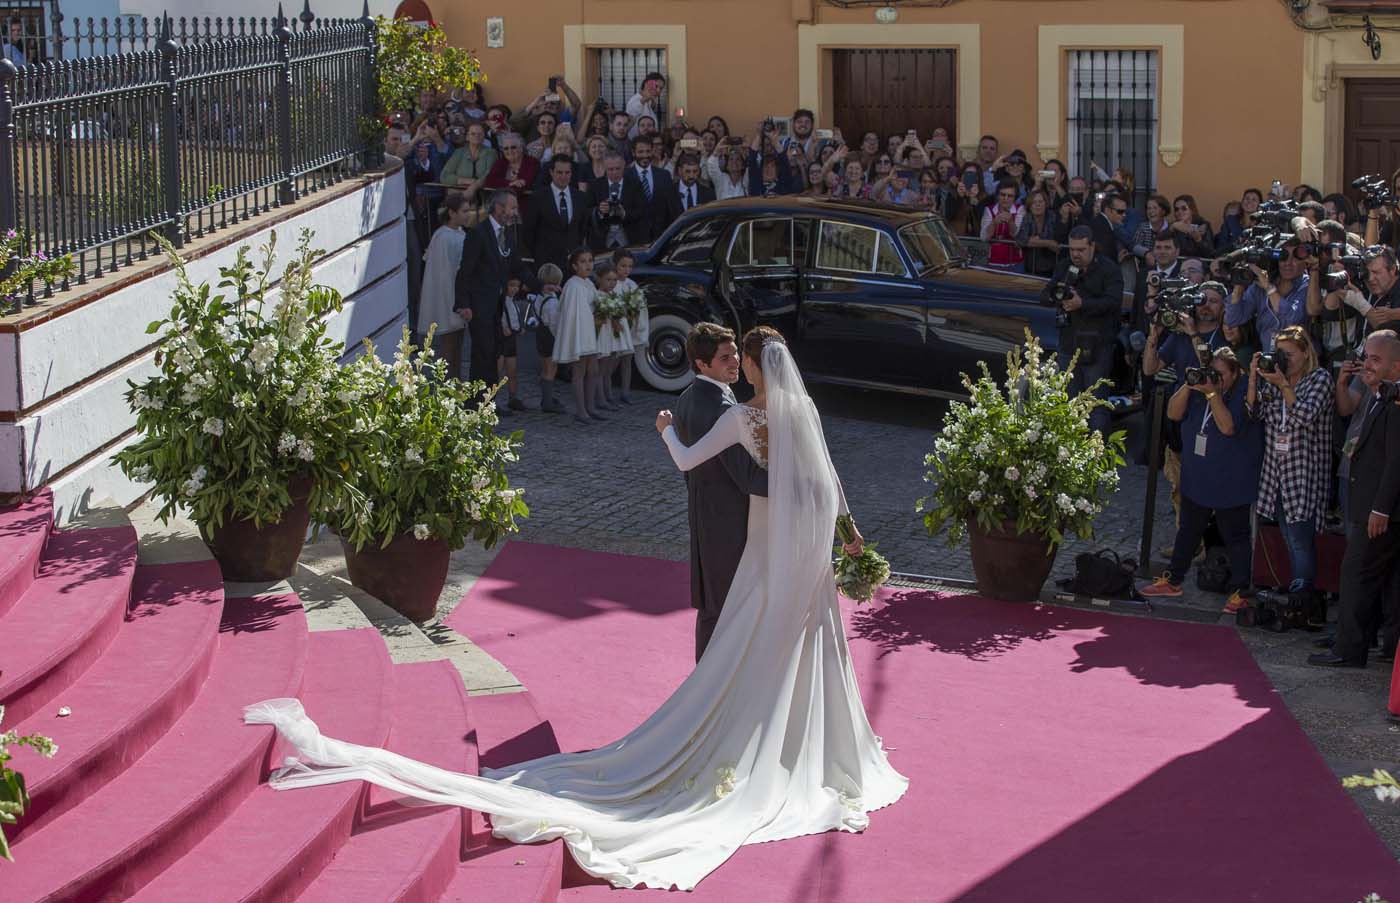 La boda del torero Cayetano Rivera y la presentadora Eva González (fotos)